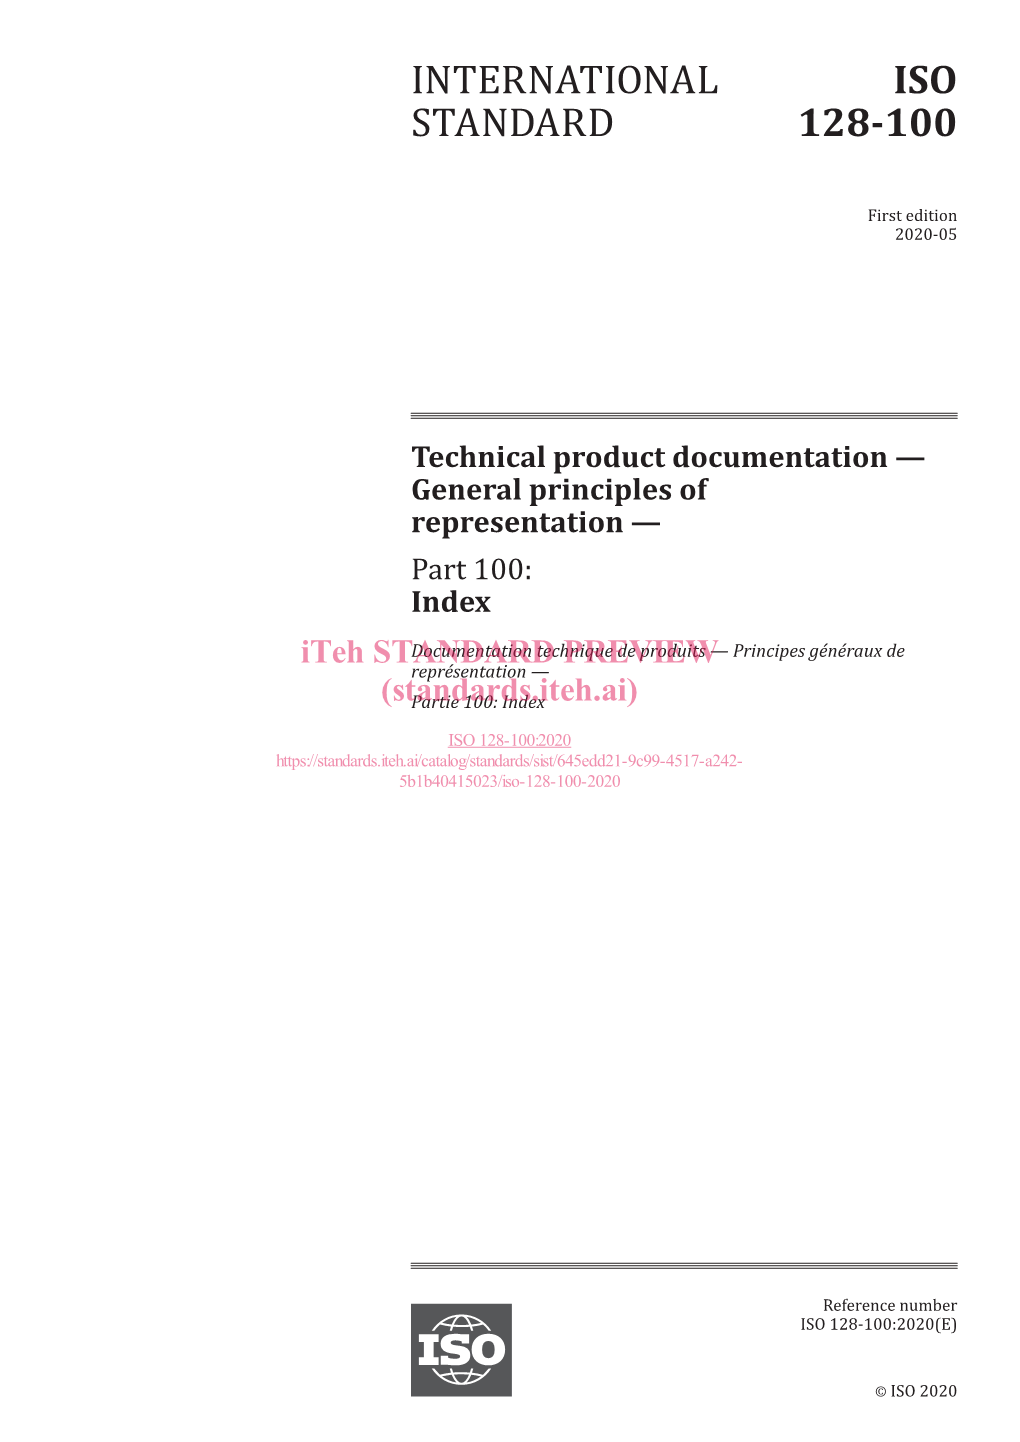 International Standard Iso 128-100:2020(E)